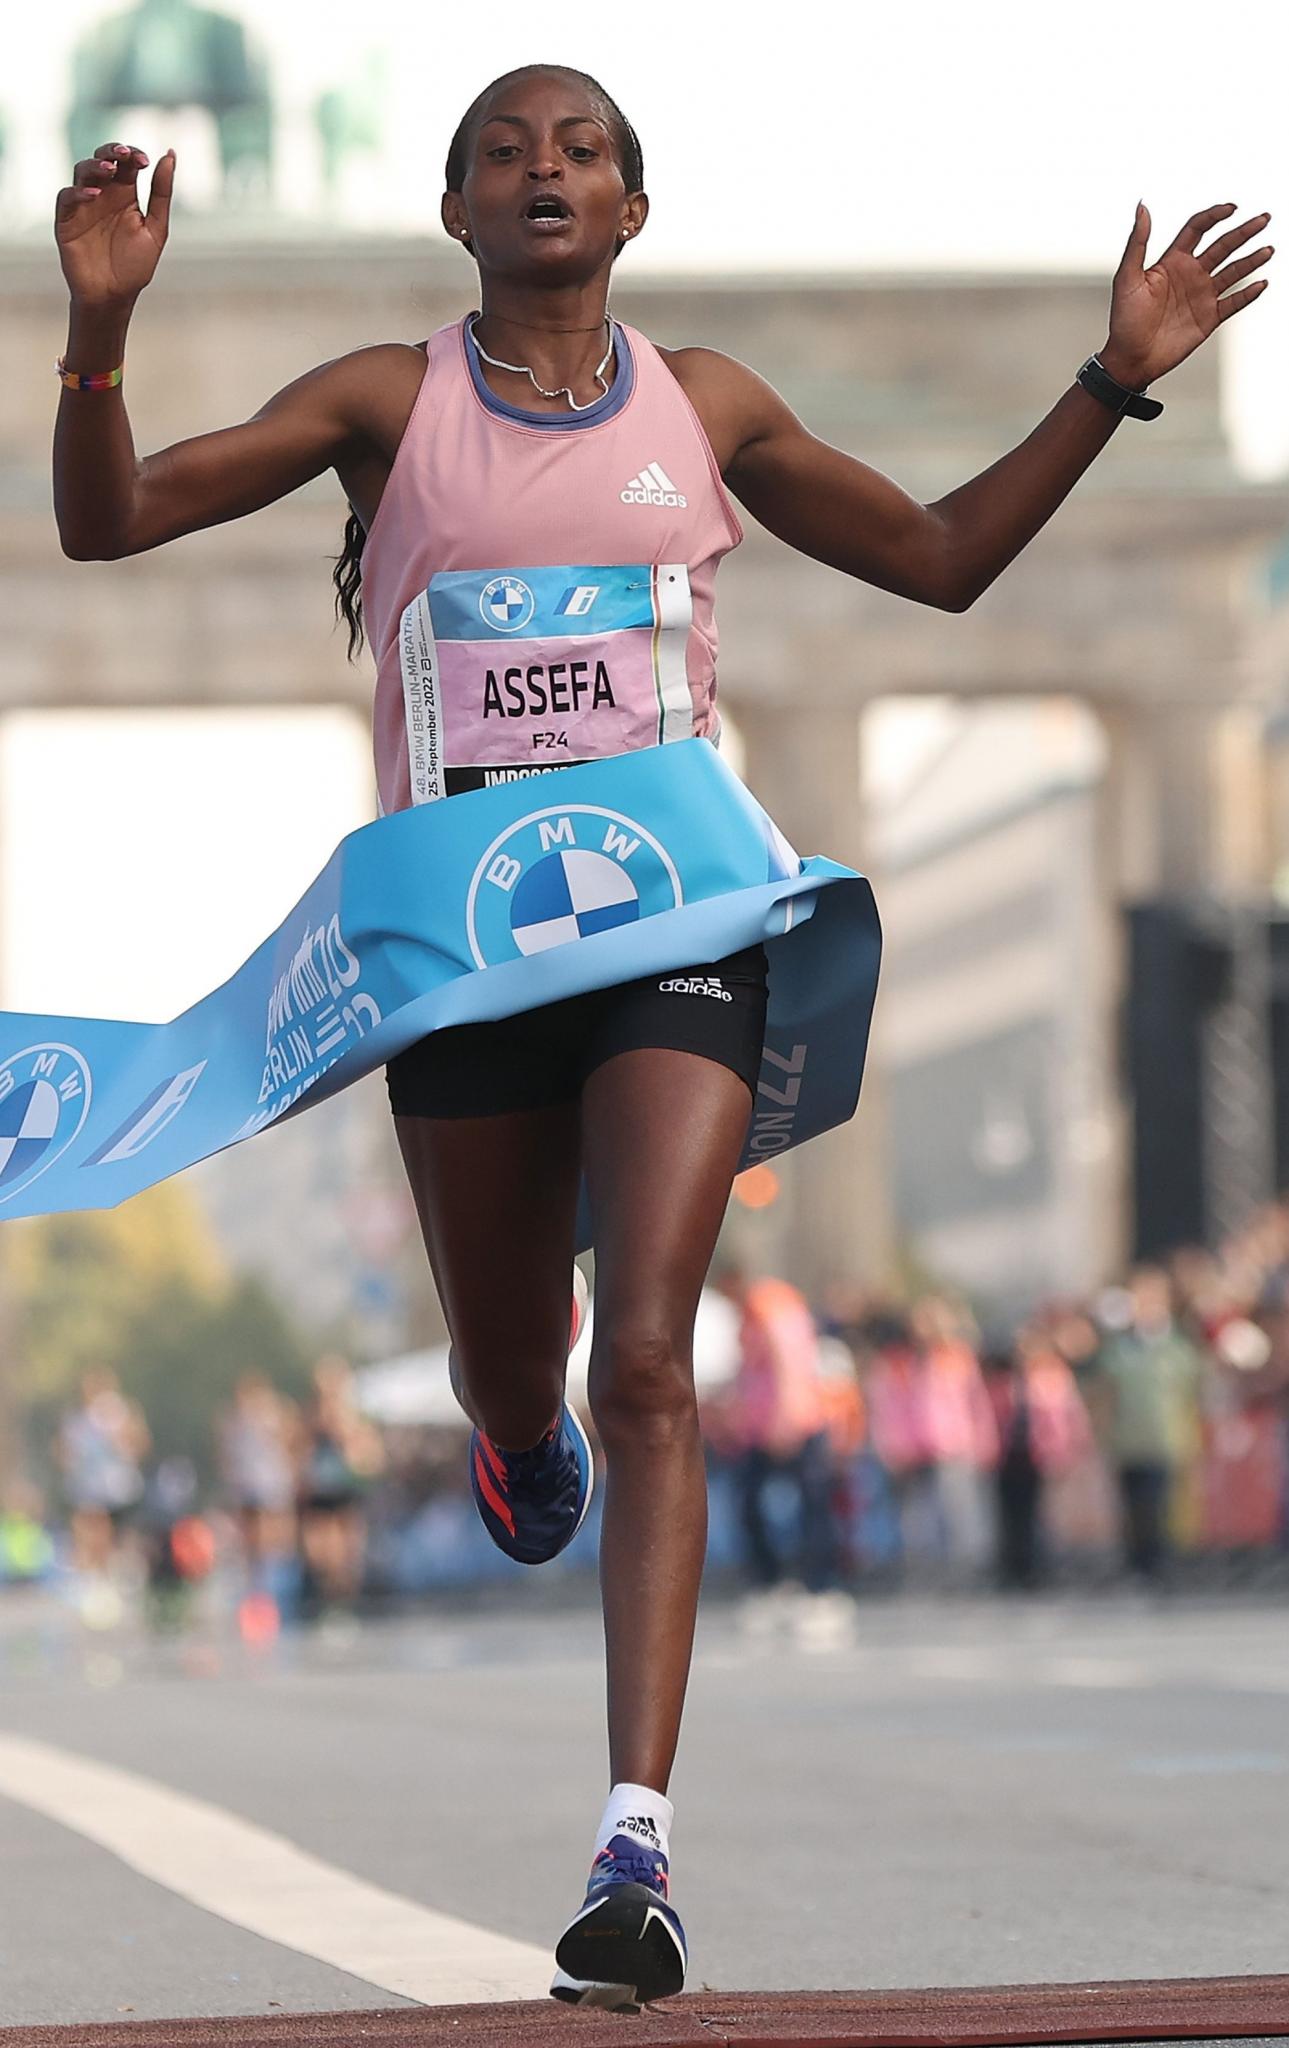 Marathons-tigist-assefa-ethiopia-crosses-finish-line